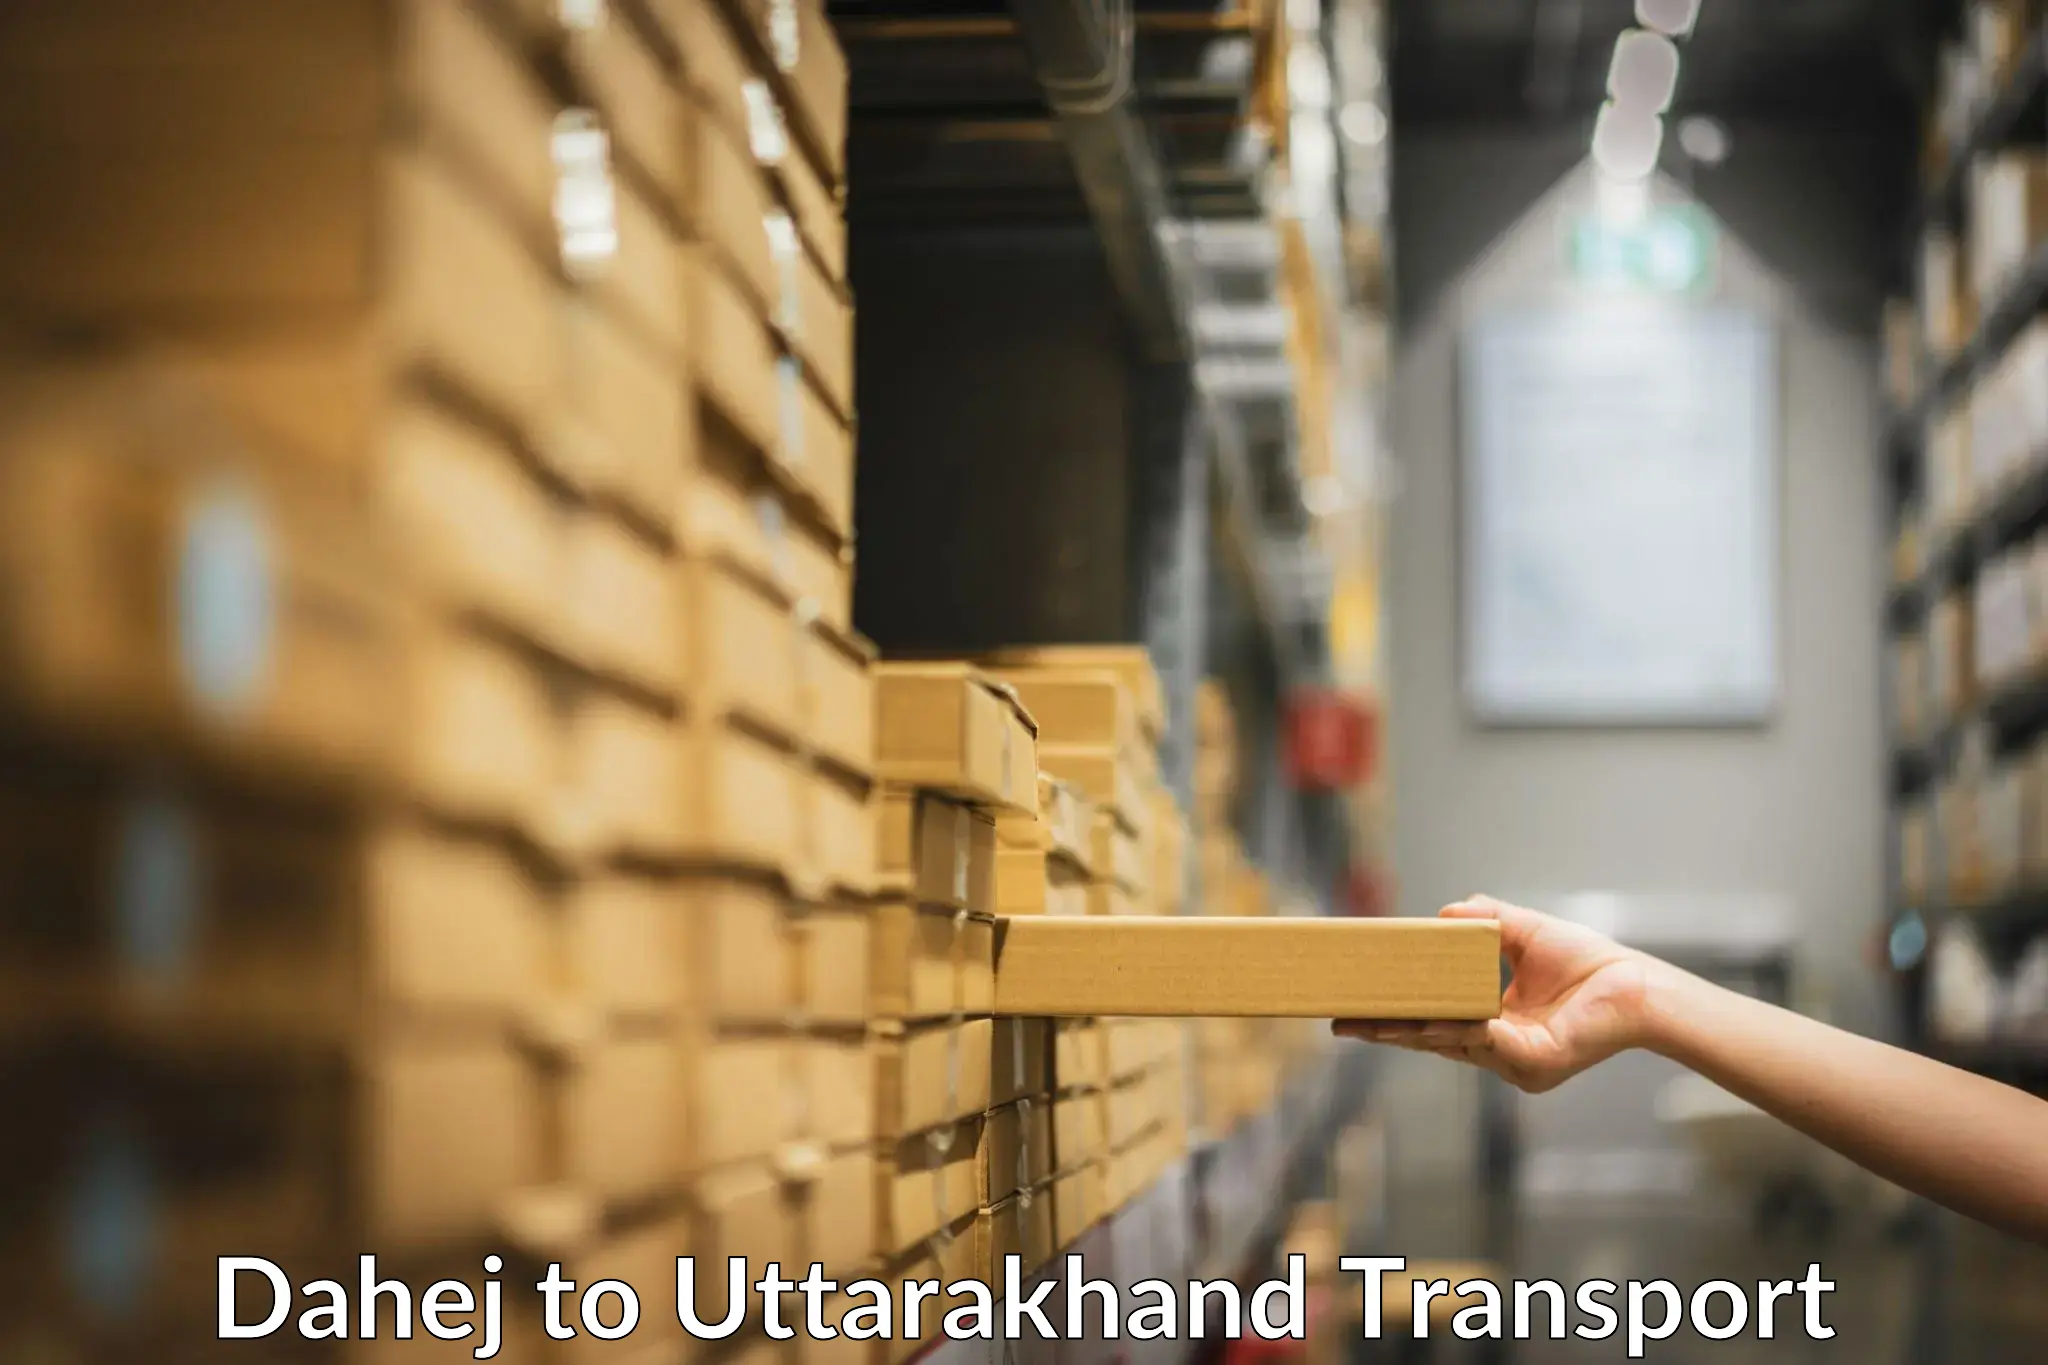 Lorry transport service Dahej to Uttarkashi